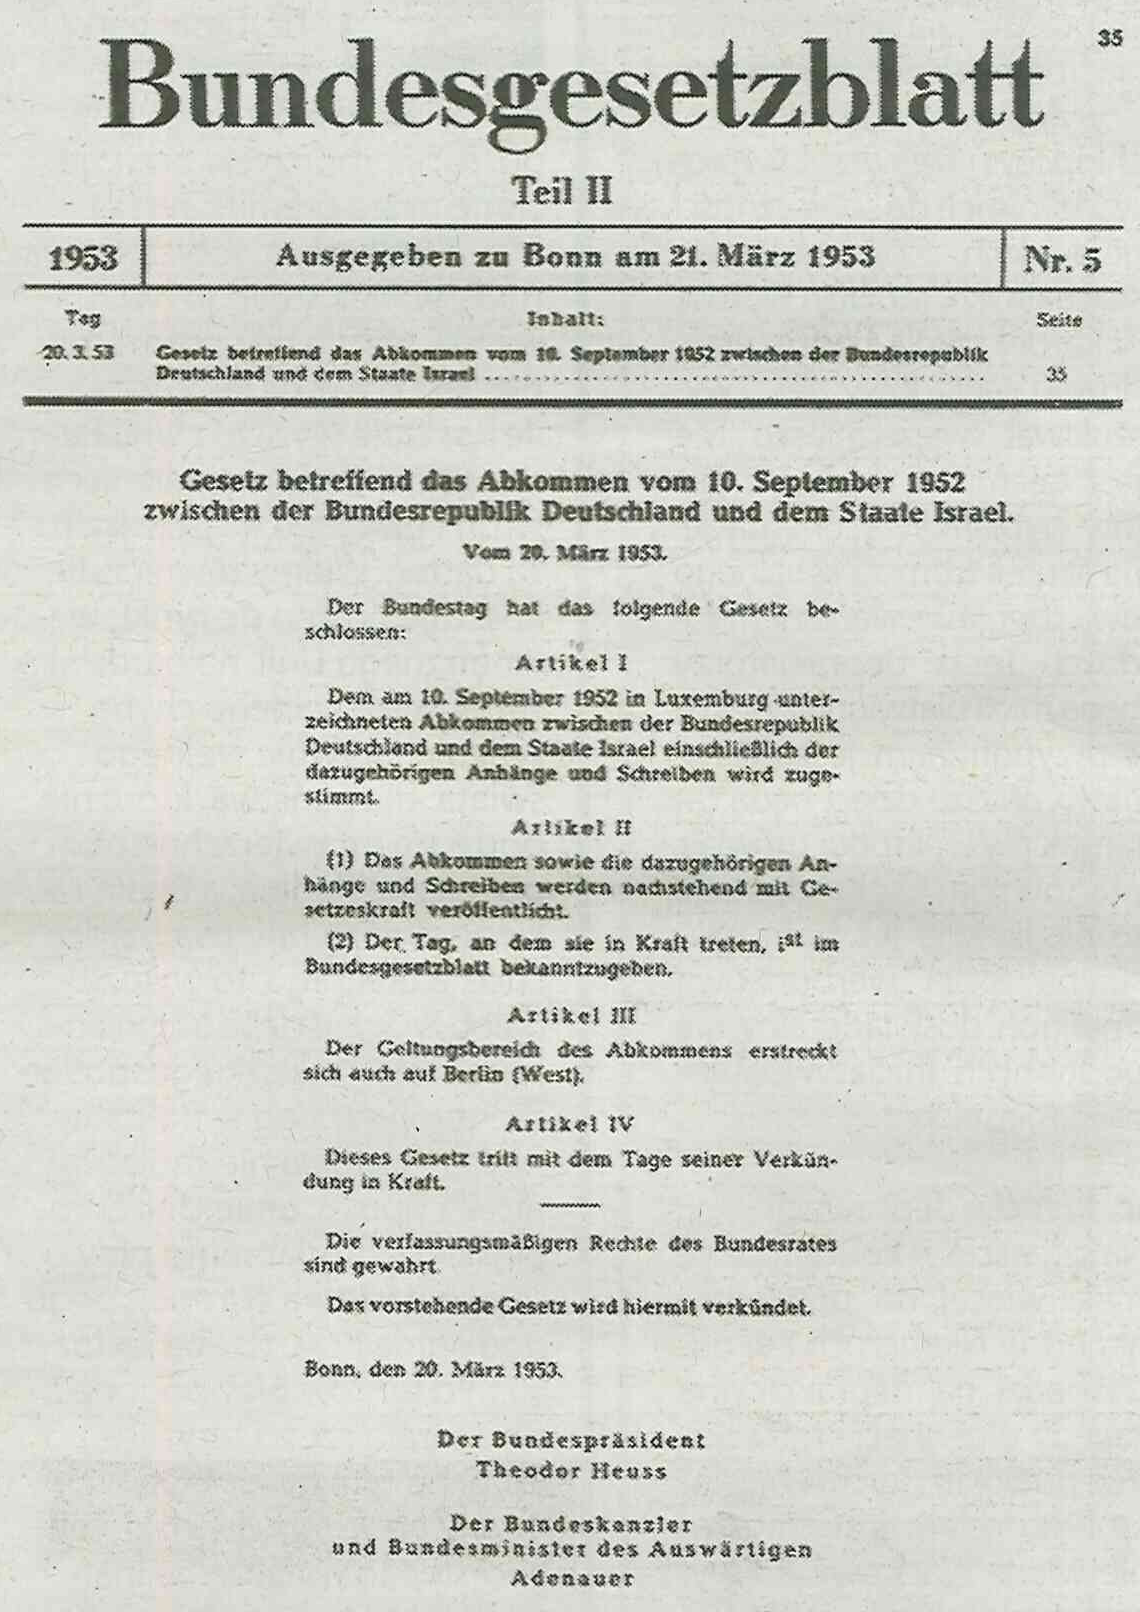 Umowa między RFN a Izraelem została podpisana 10 września 1952 r. w Luksemburgu, zawiera informacje pokazujące, że zagadnienie aktywów pozostawionych po wojnie bezpotomnie było już wtedy w 1952 r. nie tylko dyskutowane, ale też kompleksowo, finansowo przez obie strony rozwiązane!